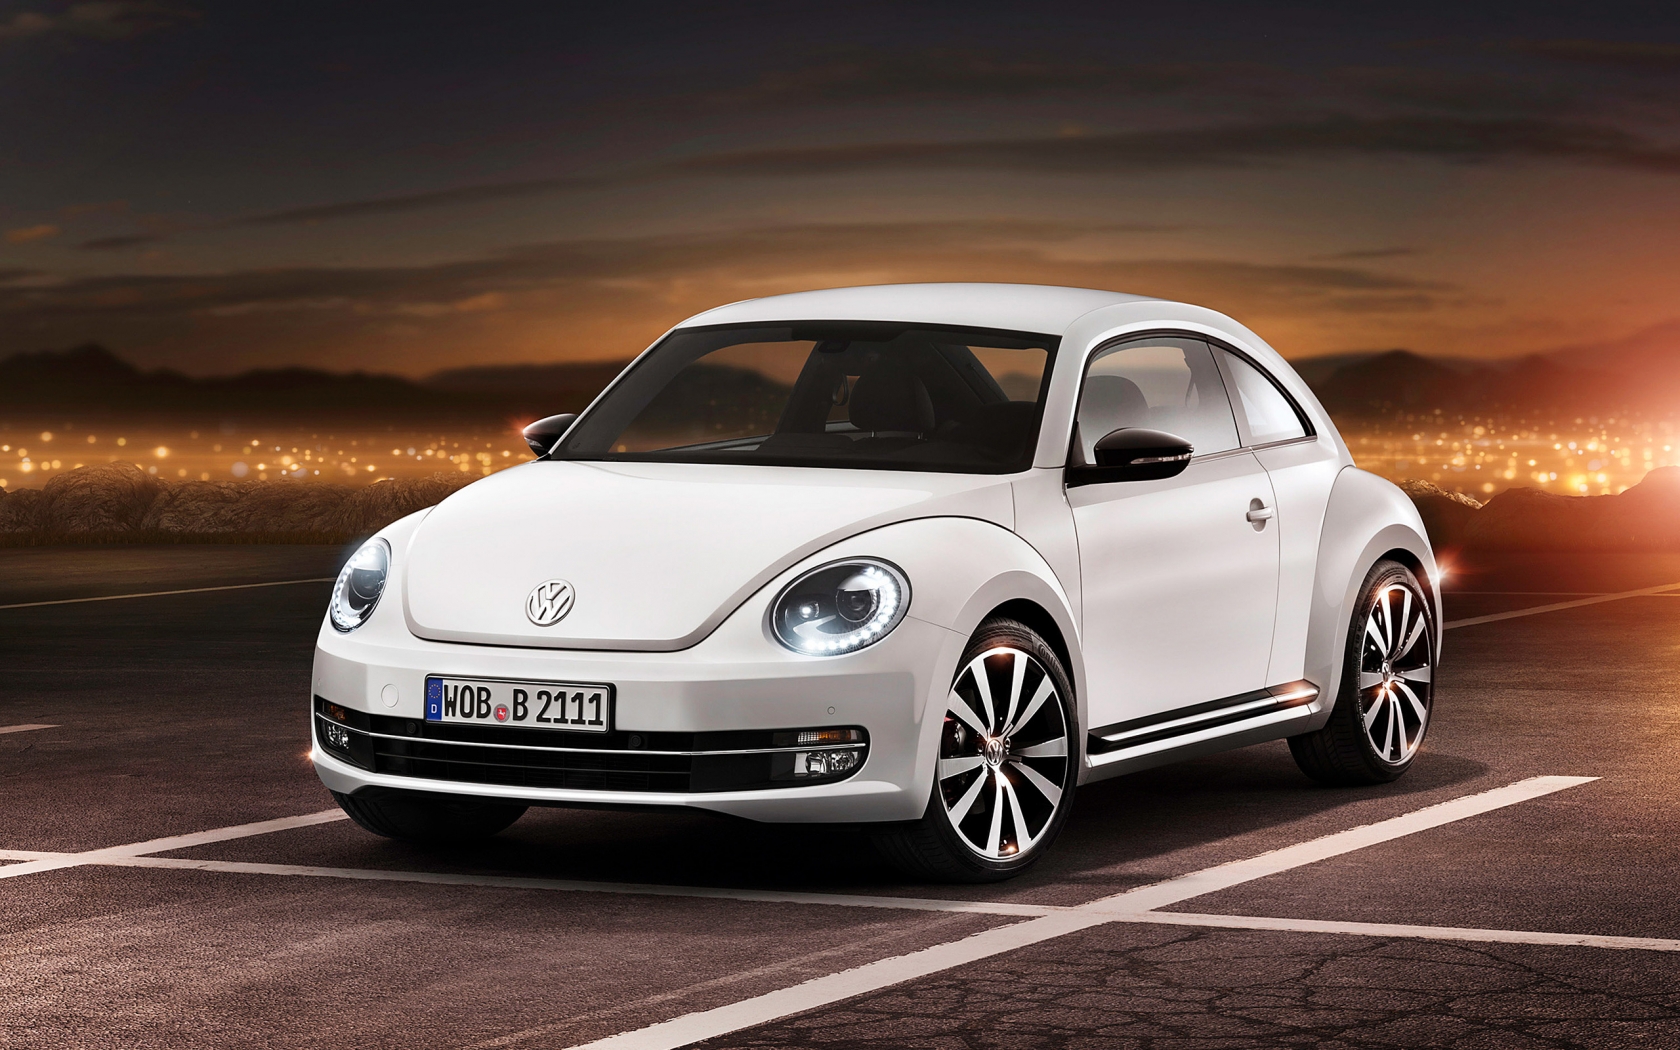 2012 Volkswagen Beetle for 1680 x 1050 widescreen resolution